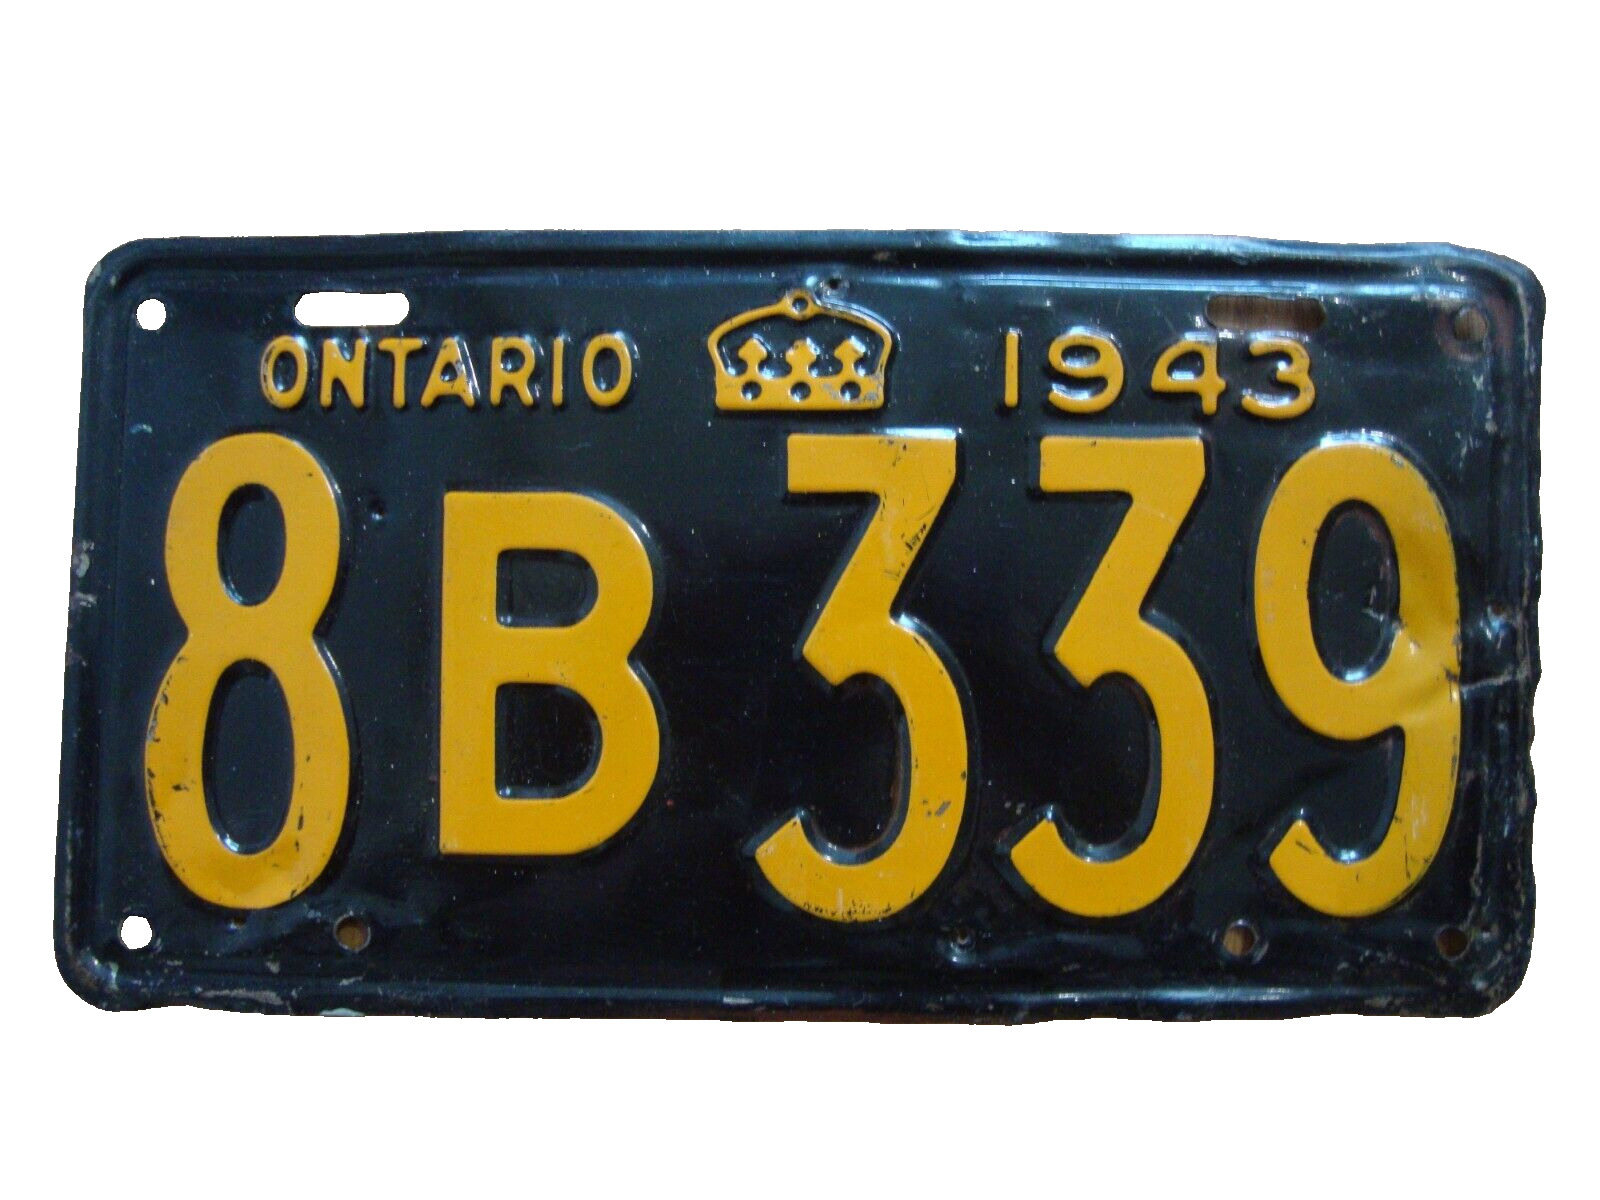 1943 Ontario Canada vintage license plate in original condition 8B 339